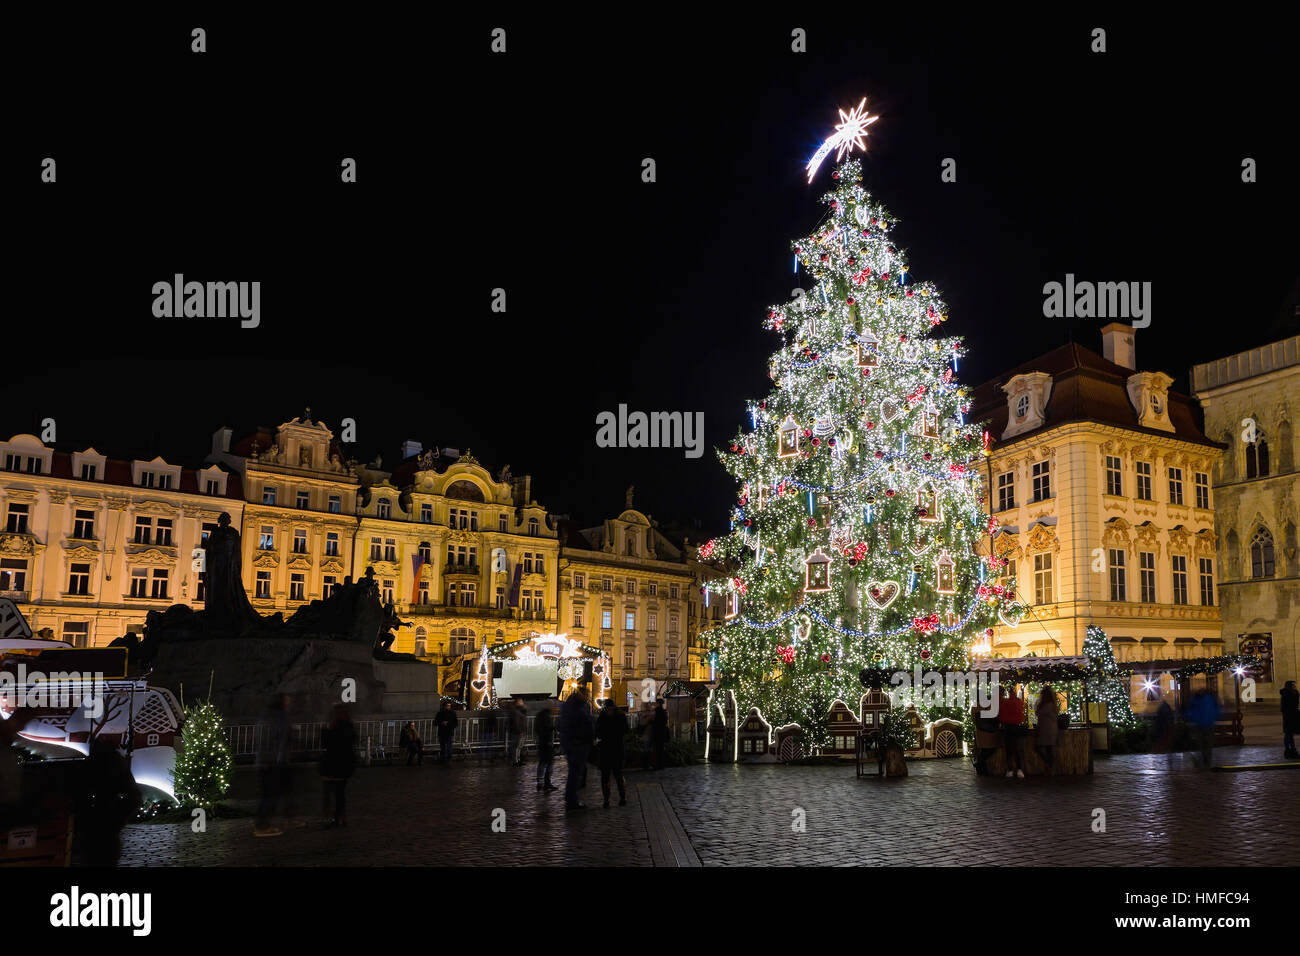 Prager Weihnachtsmarkt auf dem Altstädter Ring. Zentrum von Prag ist UNESCO geschützt. Weihnachtsmarkt in Prag am Abend, Tschechische Republik Stockfoto